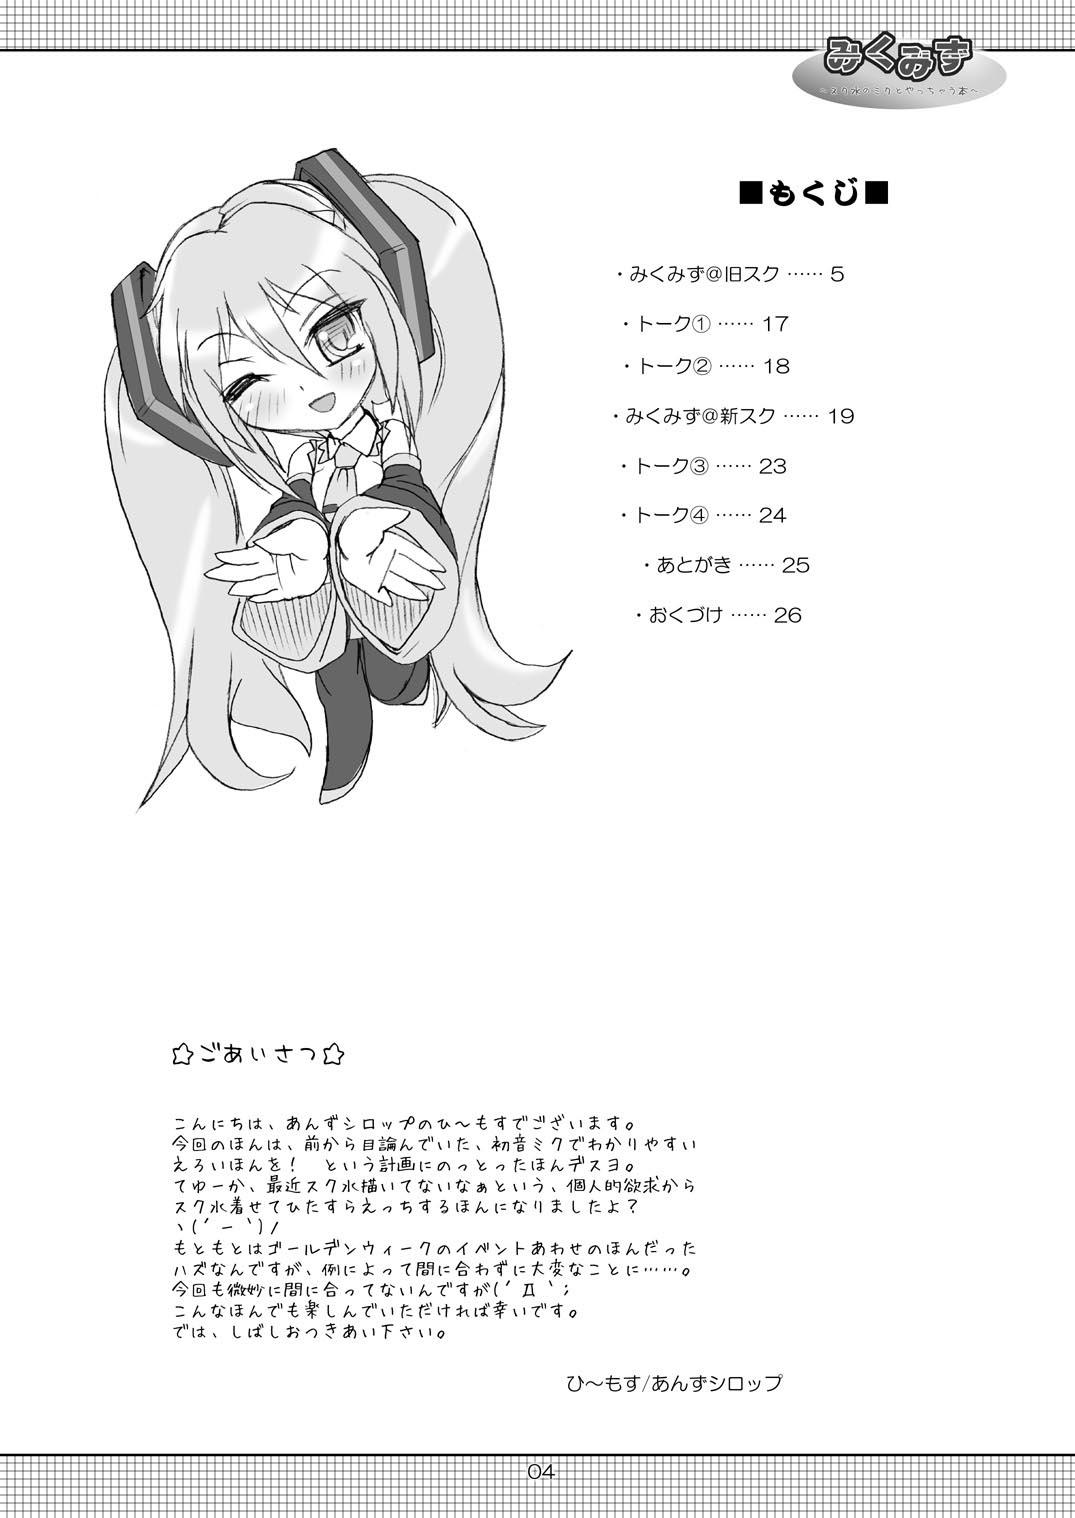 3some Miku Mizu - Vocaloid New - Page 4